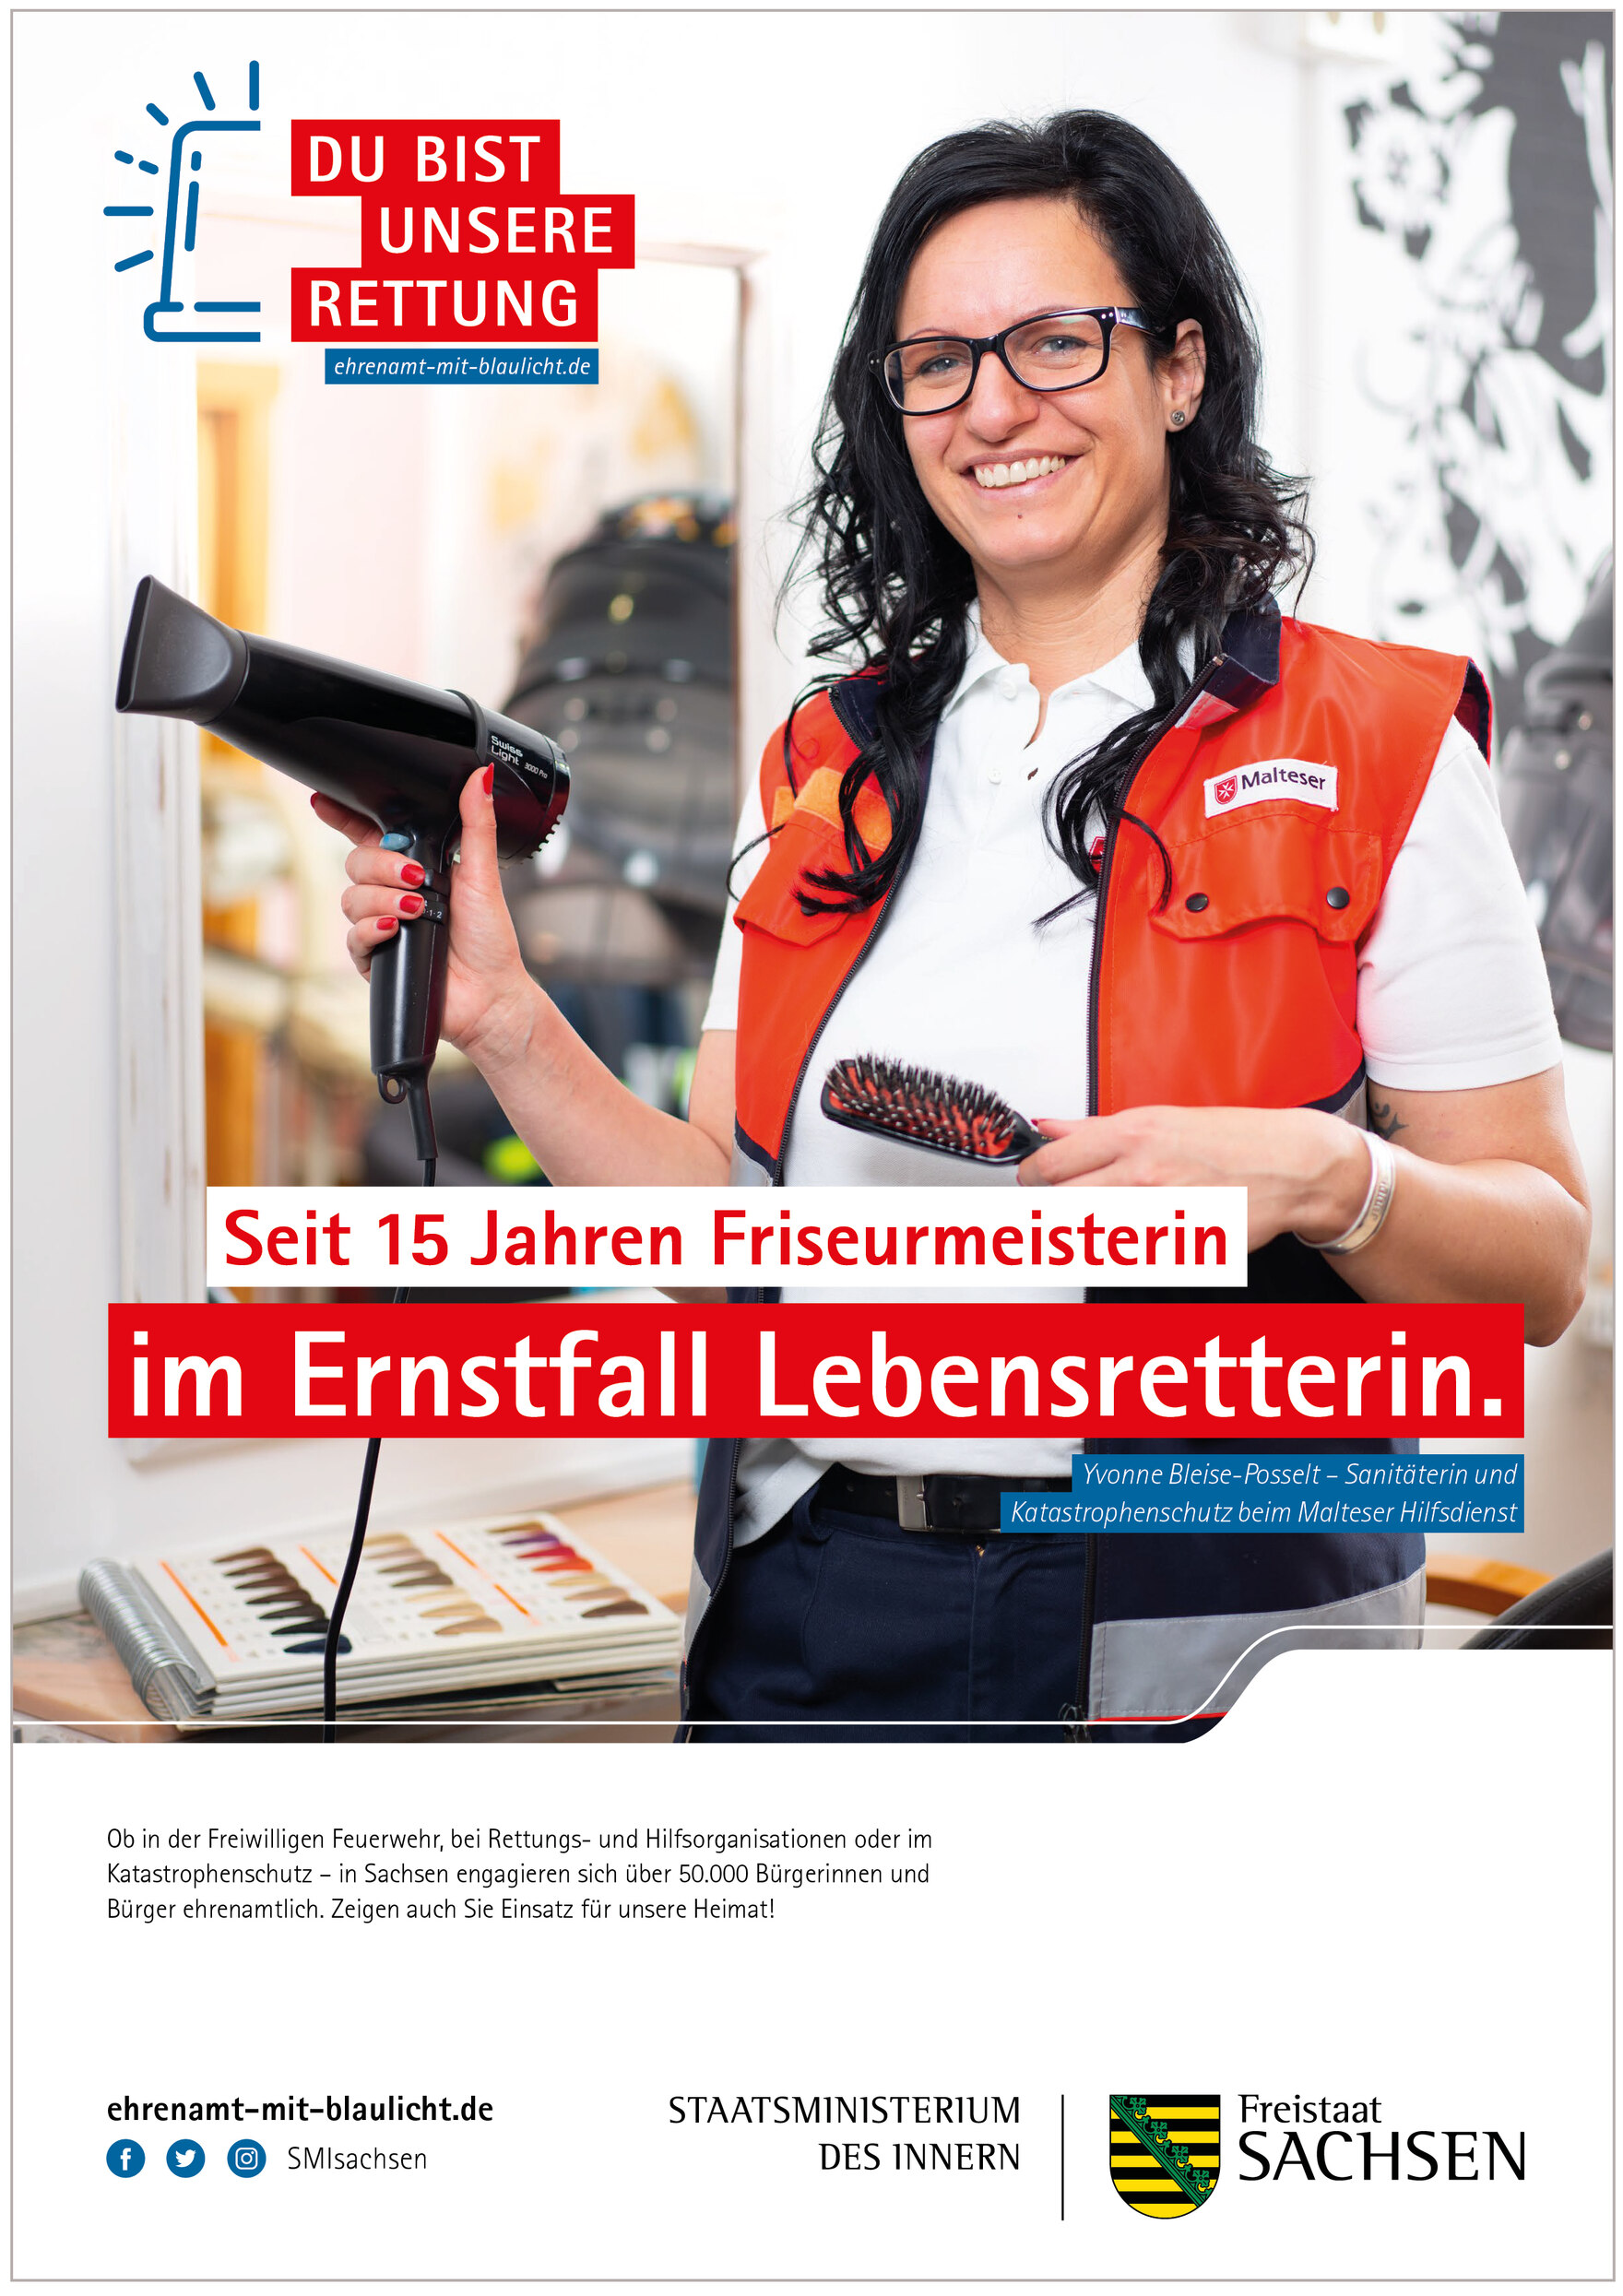 Plakatmotiv von Yvonne Bleise-Posselt mit der Aufschrift: »15 Jahre Friseurmeisterin – im Ernstfall Lebensretterin.«